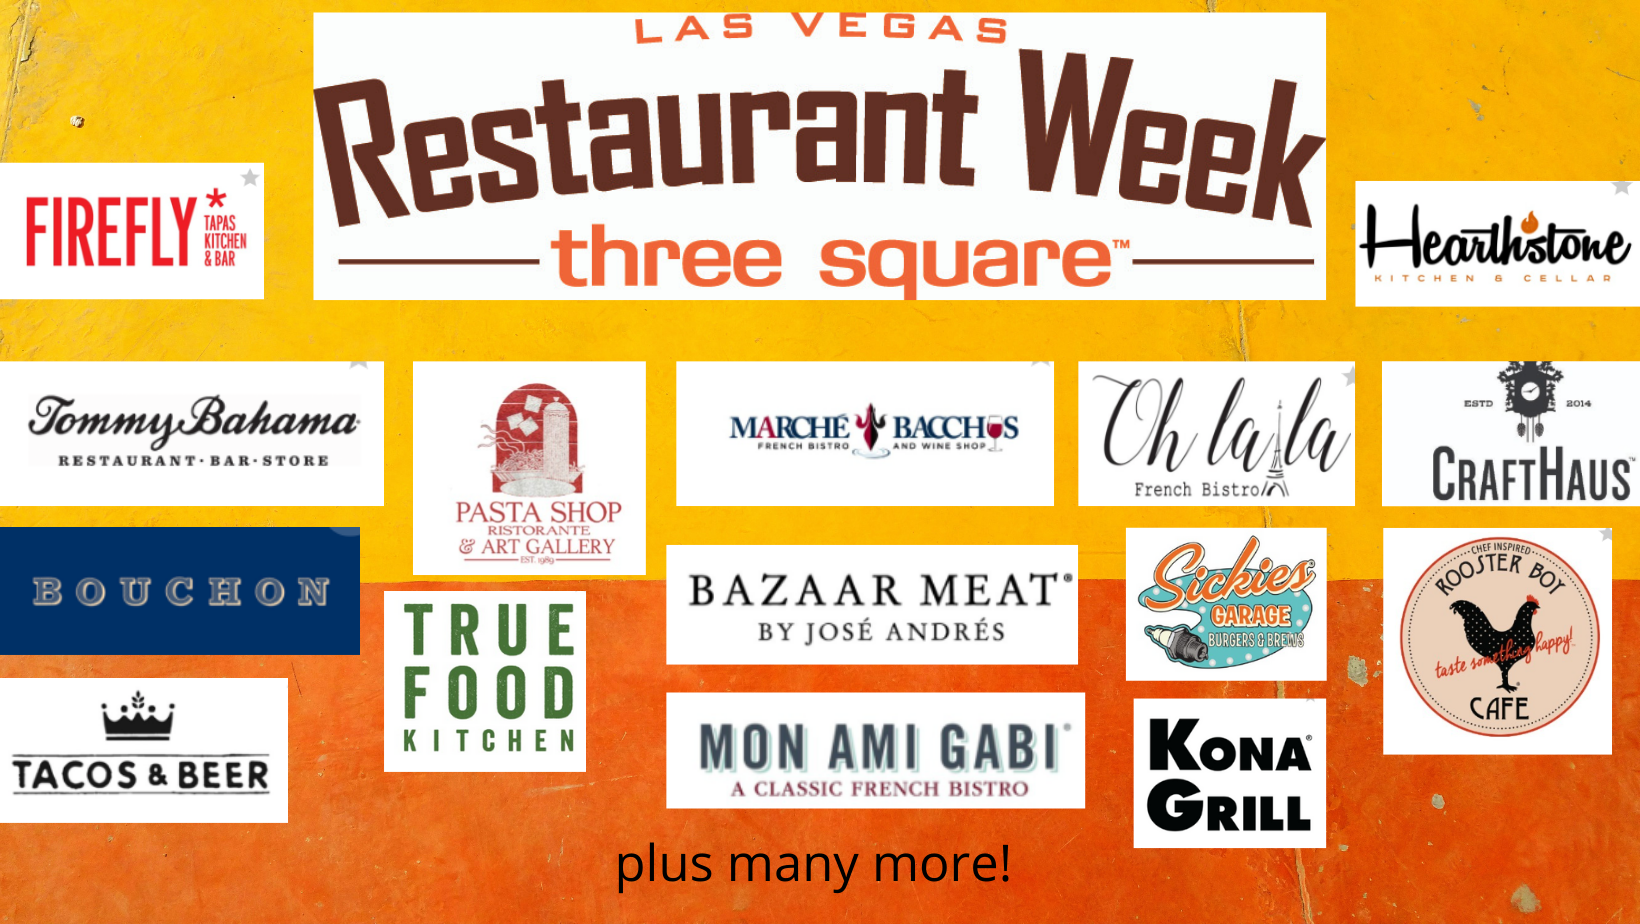 Three Square's Las Vegas Restaurant Week Returns June 718! Non